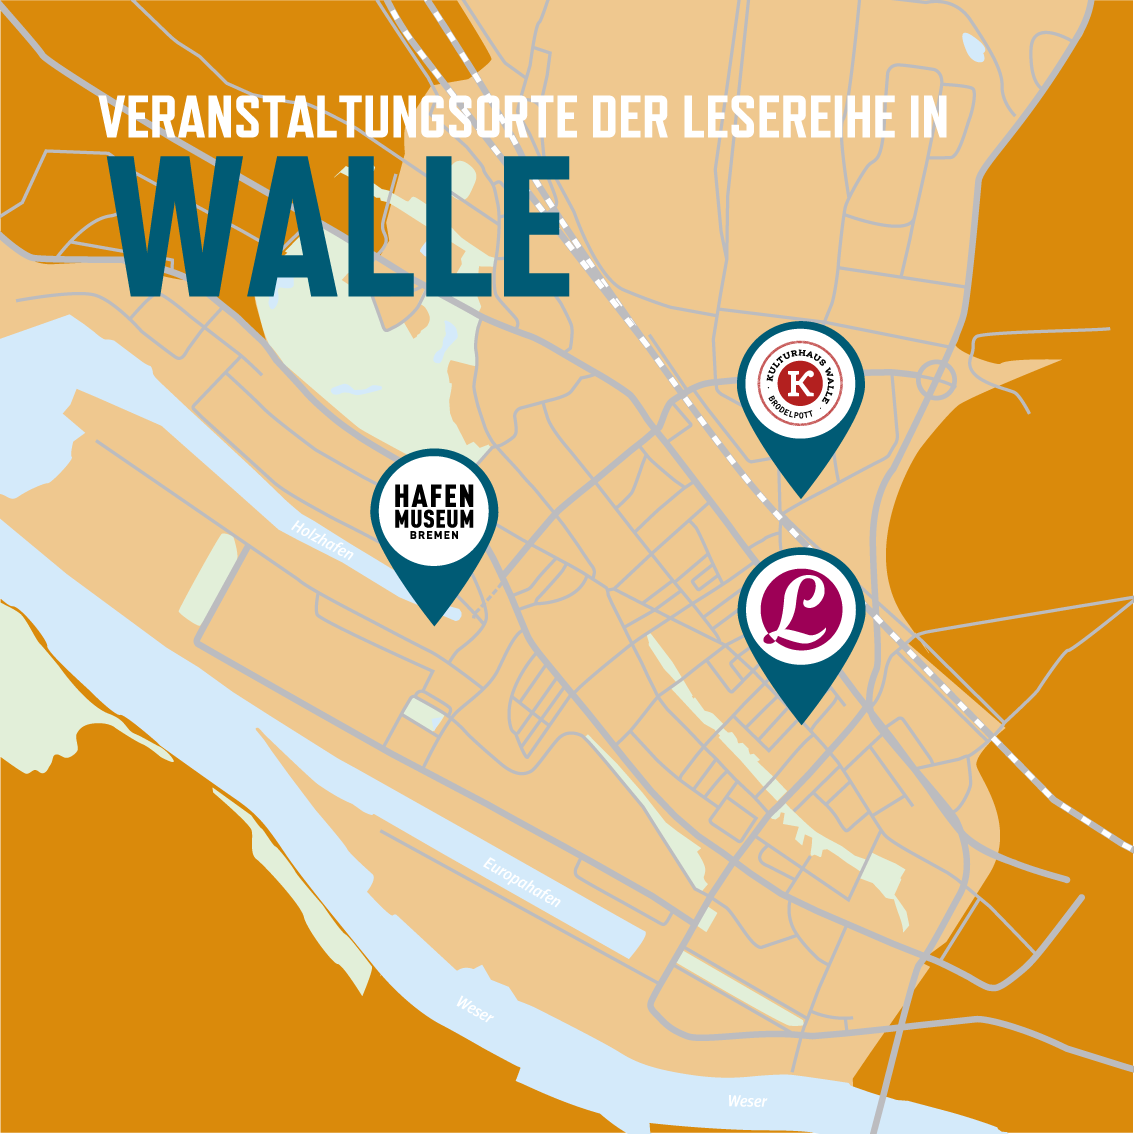 Karte von Walle mit Veranstaltungsorten